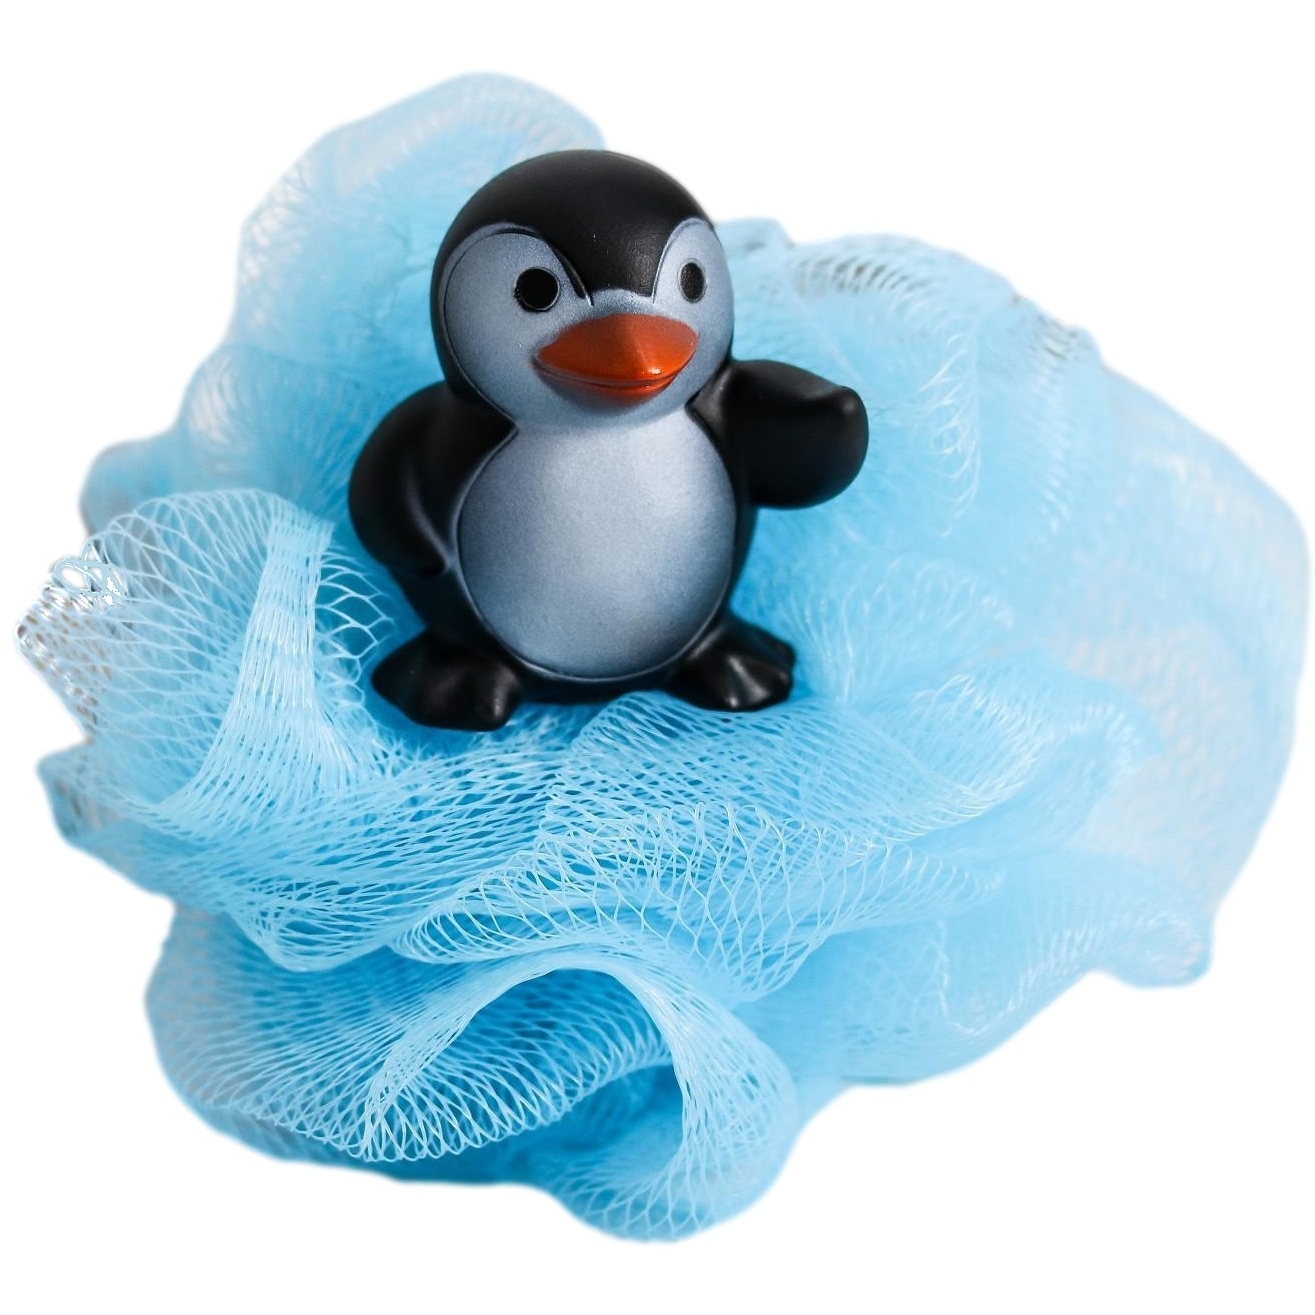 Мочалка детская для купания "Пингвин"